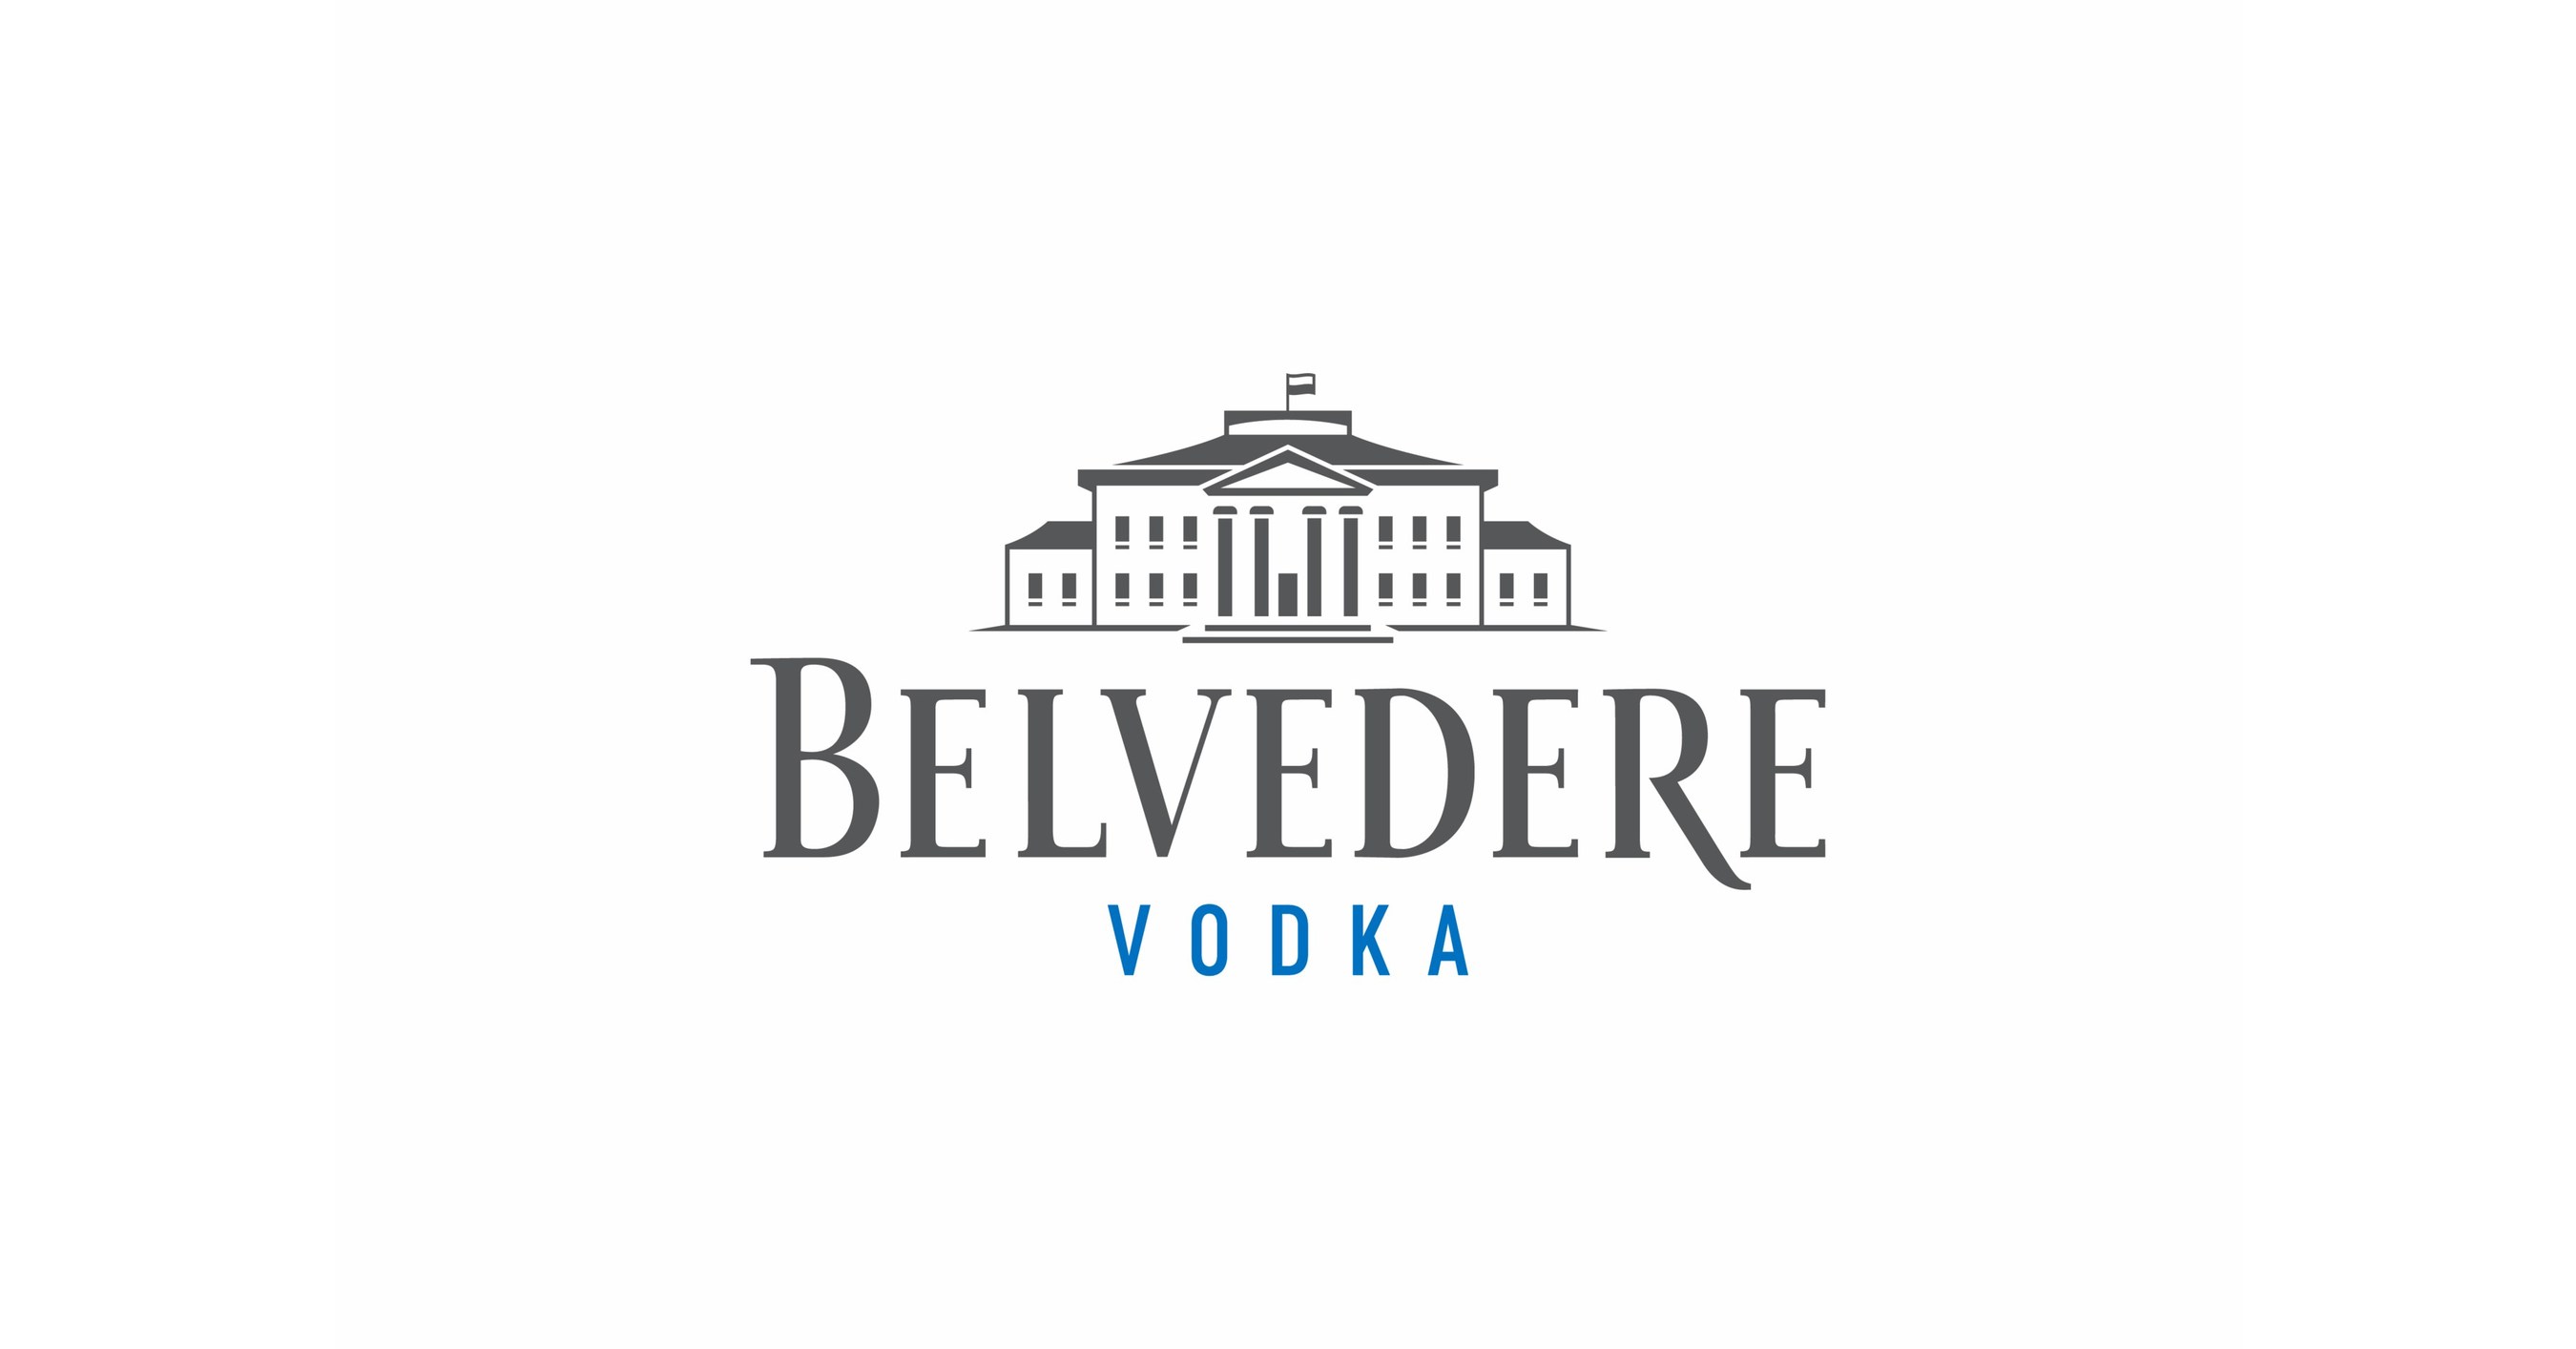 Belvedere Vodka Logo on Some Bottles for Sale. Belvedere a Brand